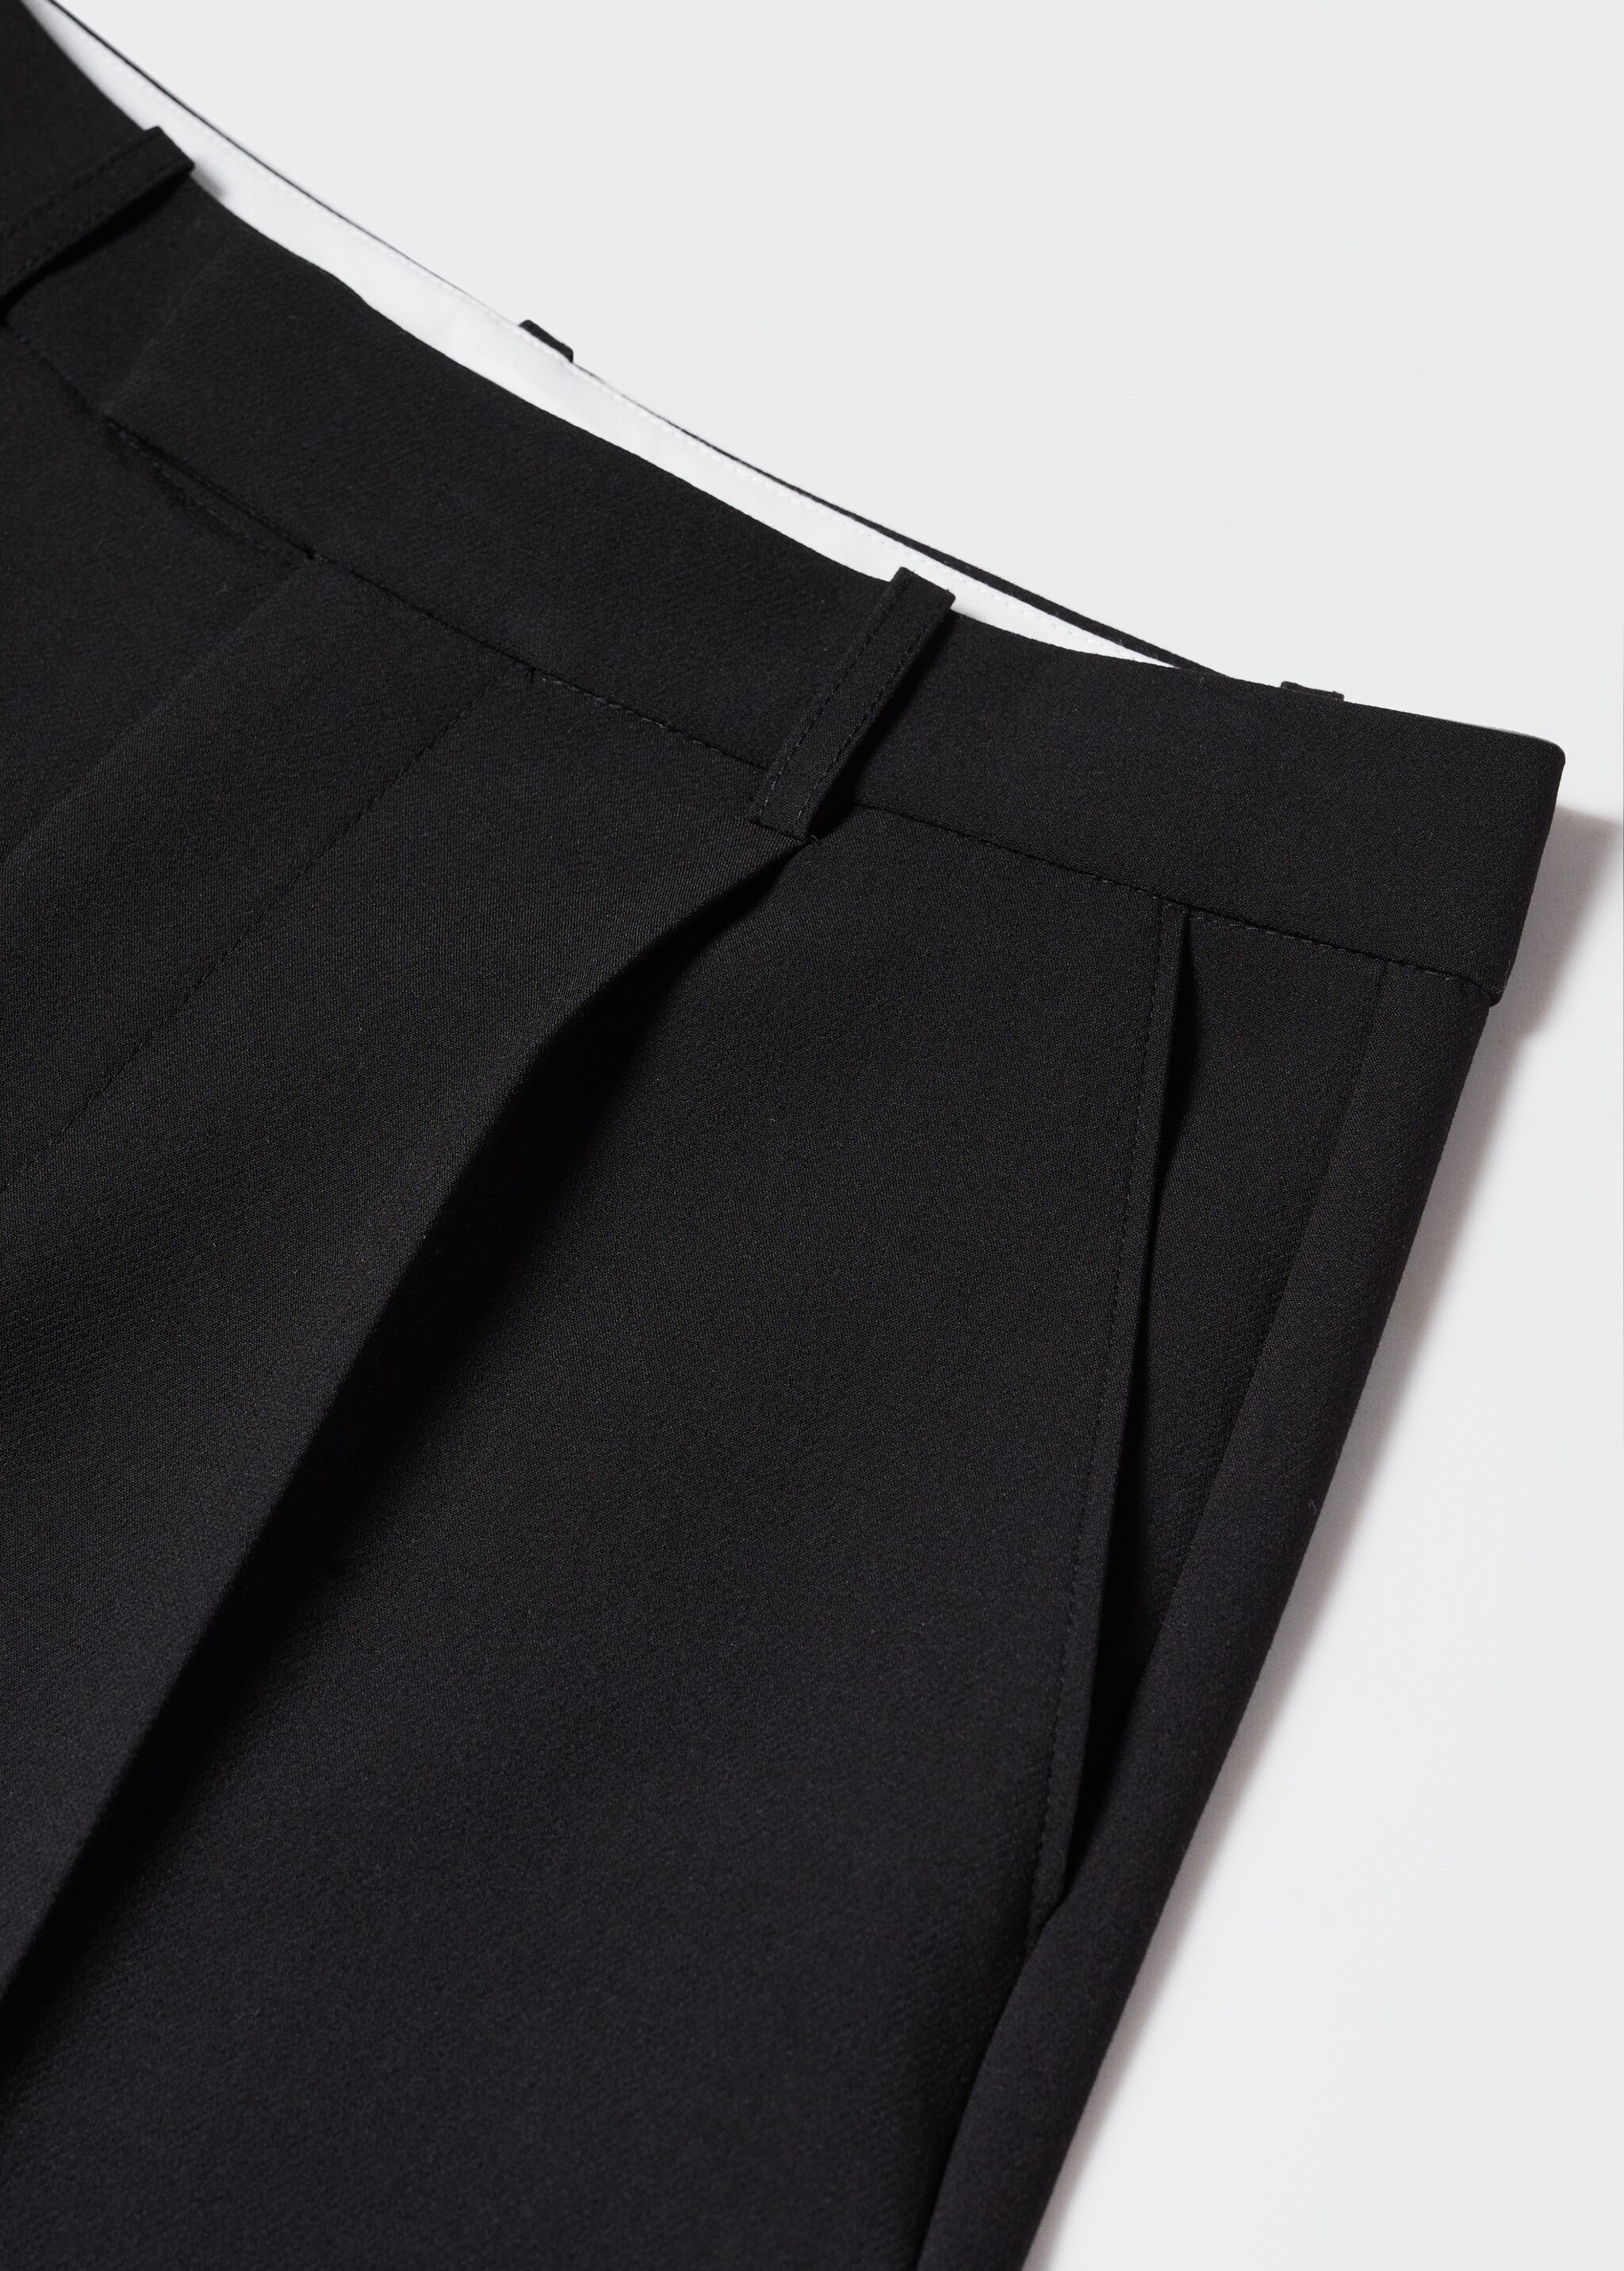 Pilili düz kesim pantolon  - Ürün detayı 8